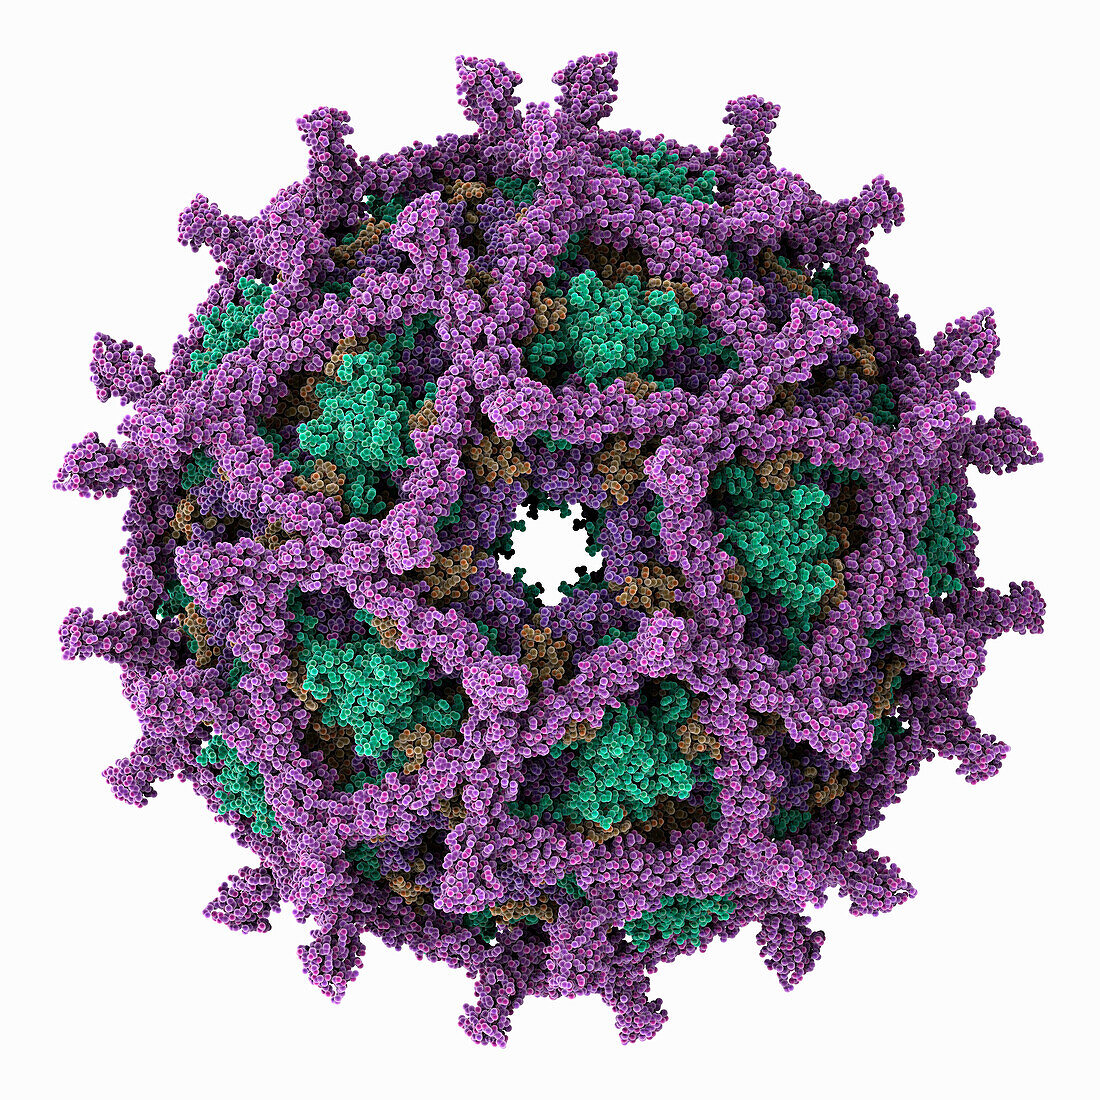 Echovirus 11 capsid, illustration